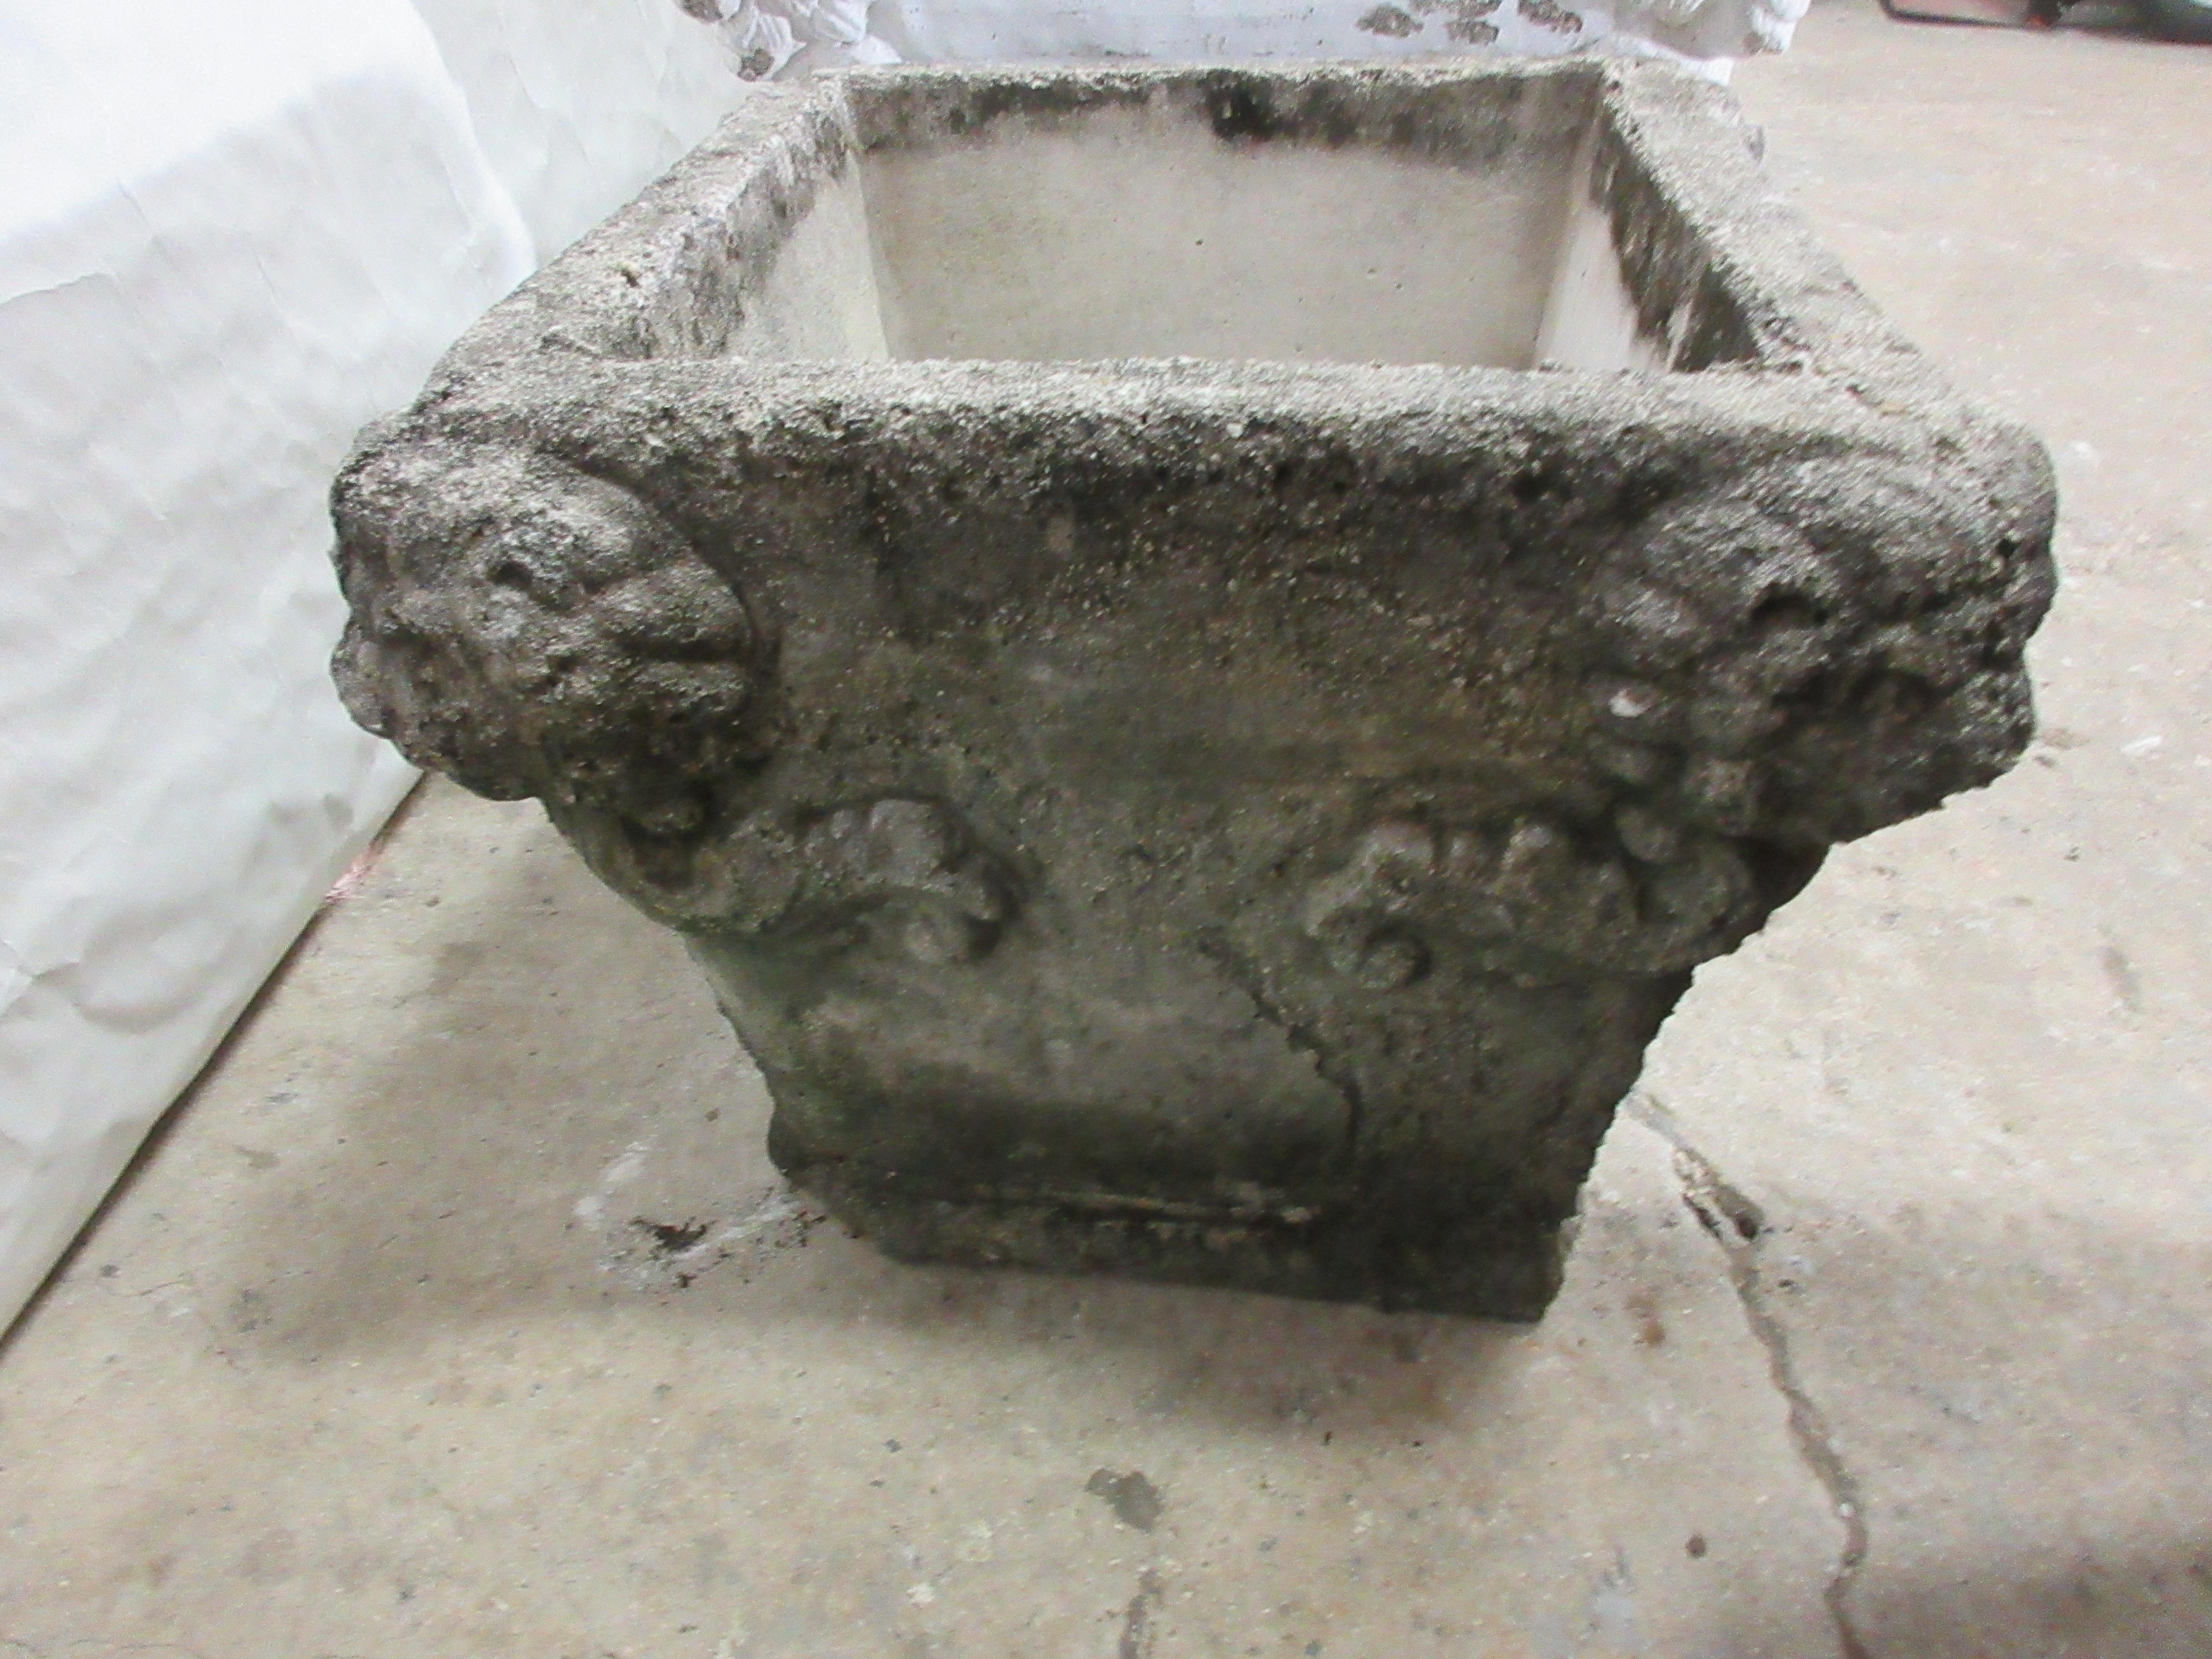 Concrete 3 Antique Lion Head Pots For Sale